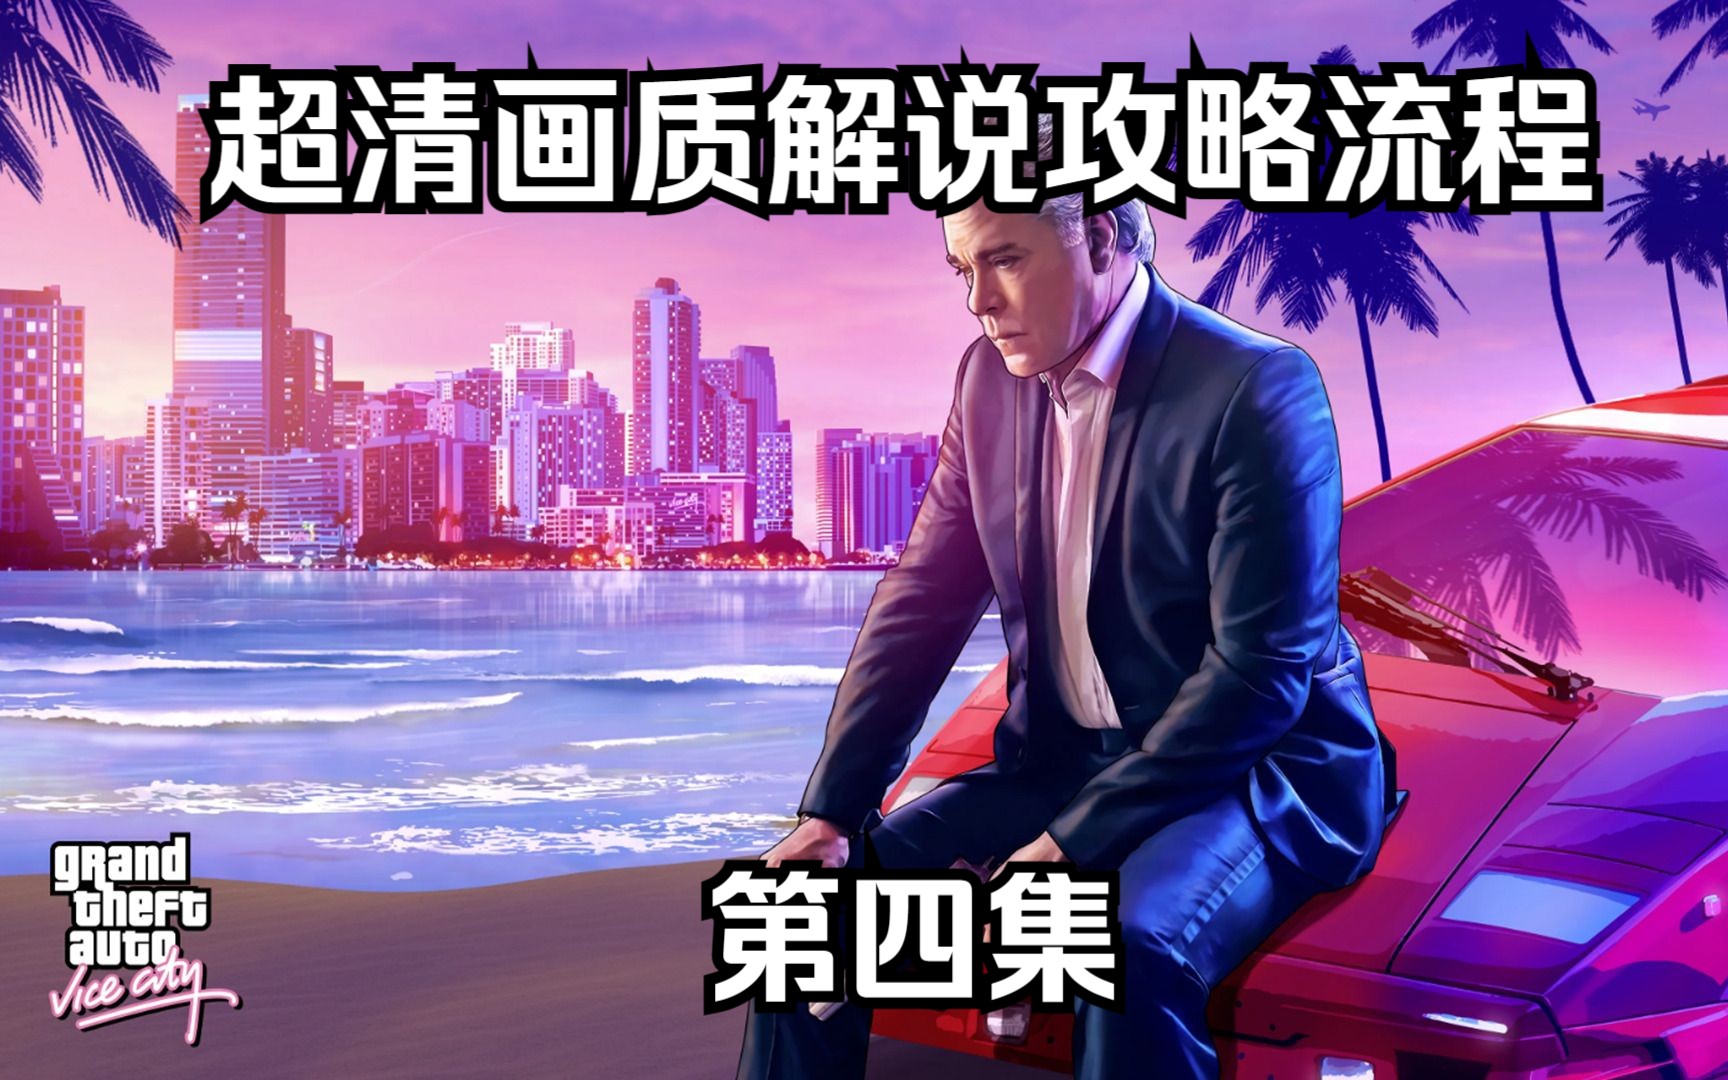 侠盗飞车罪恶都市开水上飞机发传单任务-游戏视频-搜狐视频